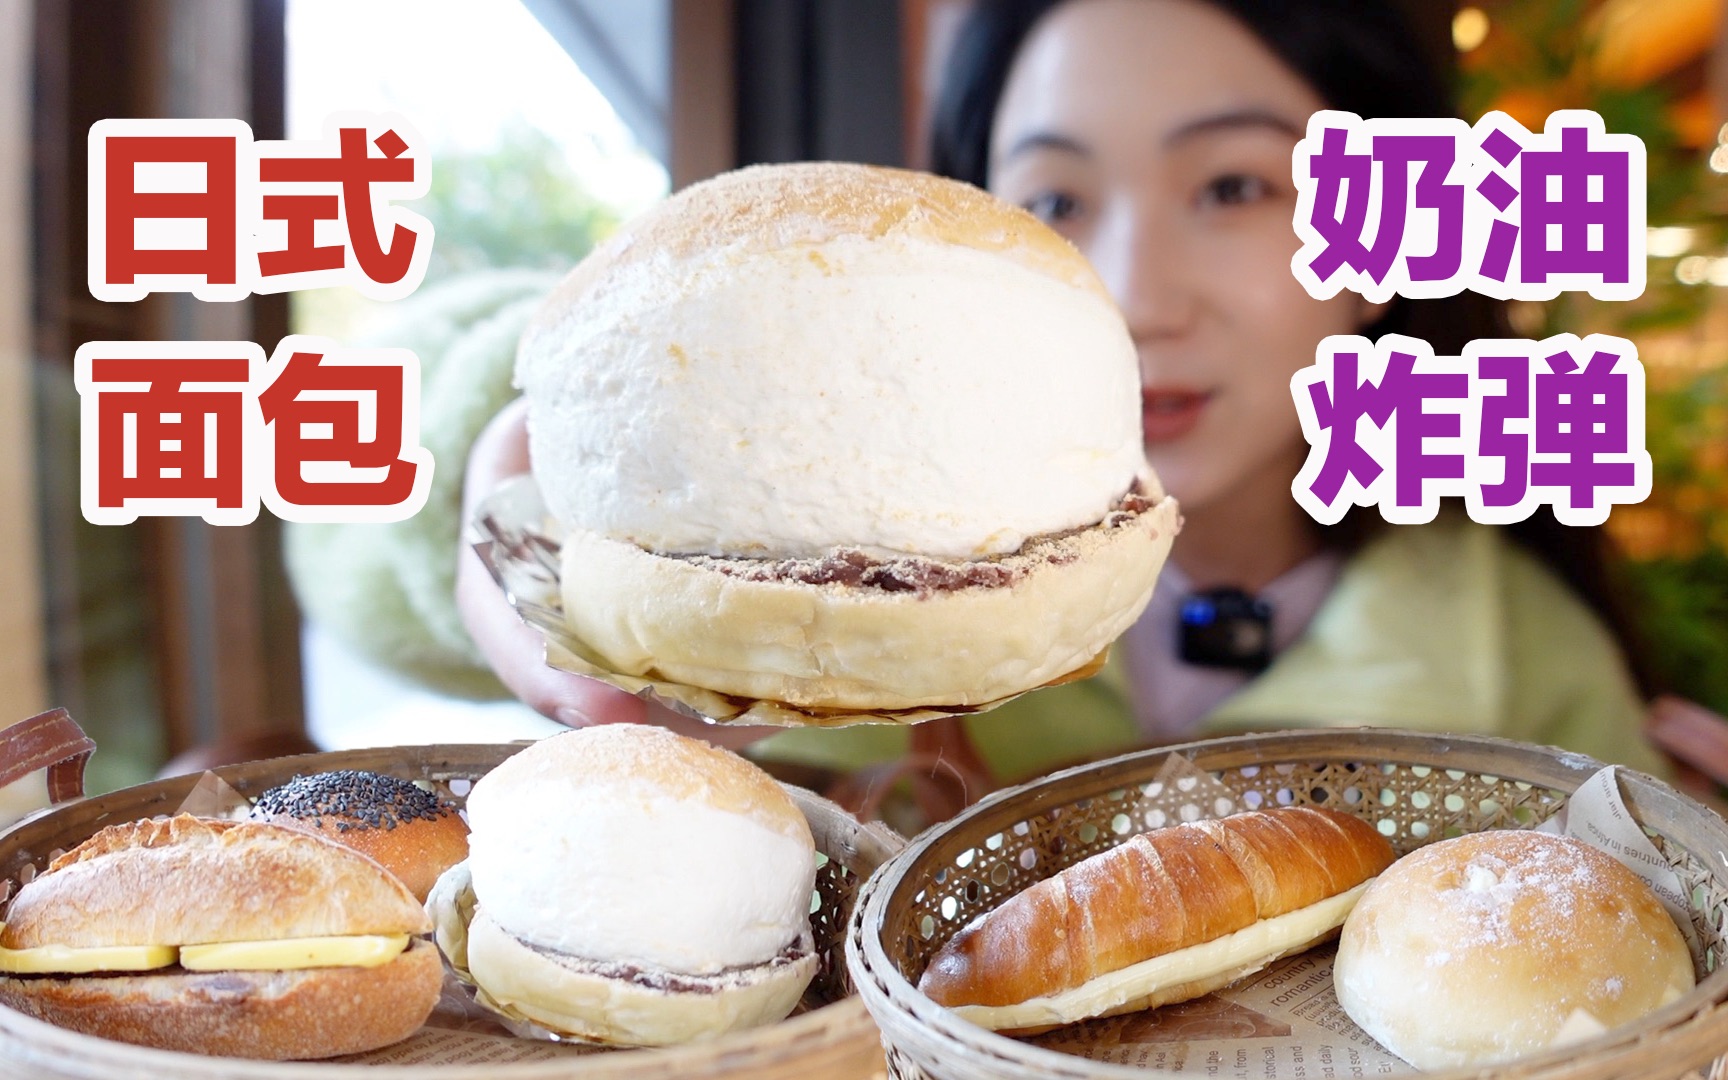 冬季限定日式面包,我仿佛买了个奶油炸弹!美食探店/无广试吃员